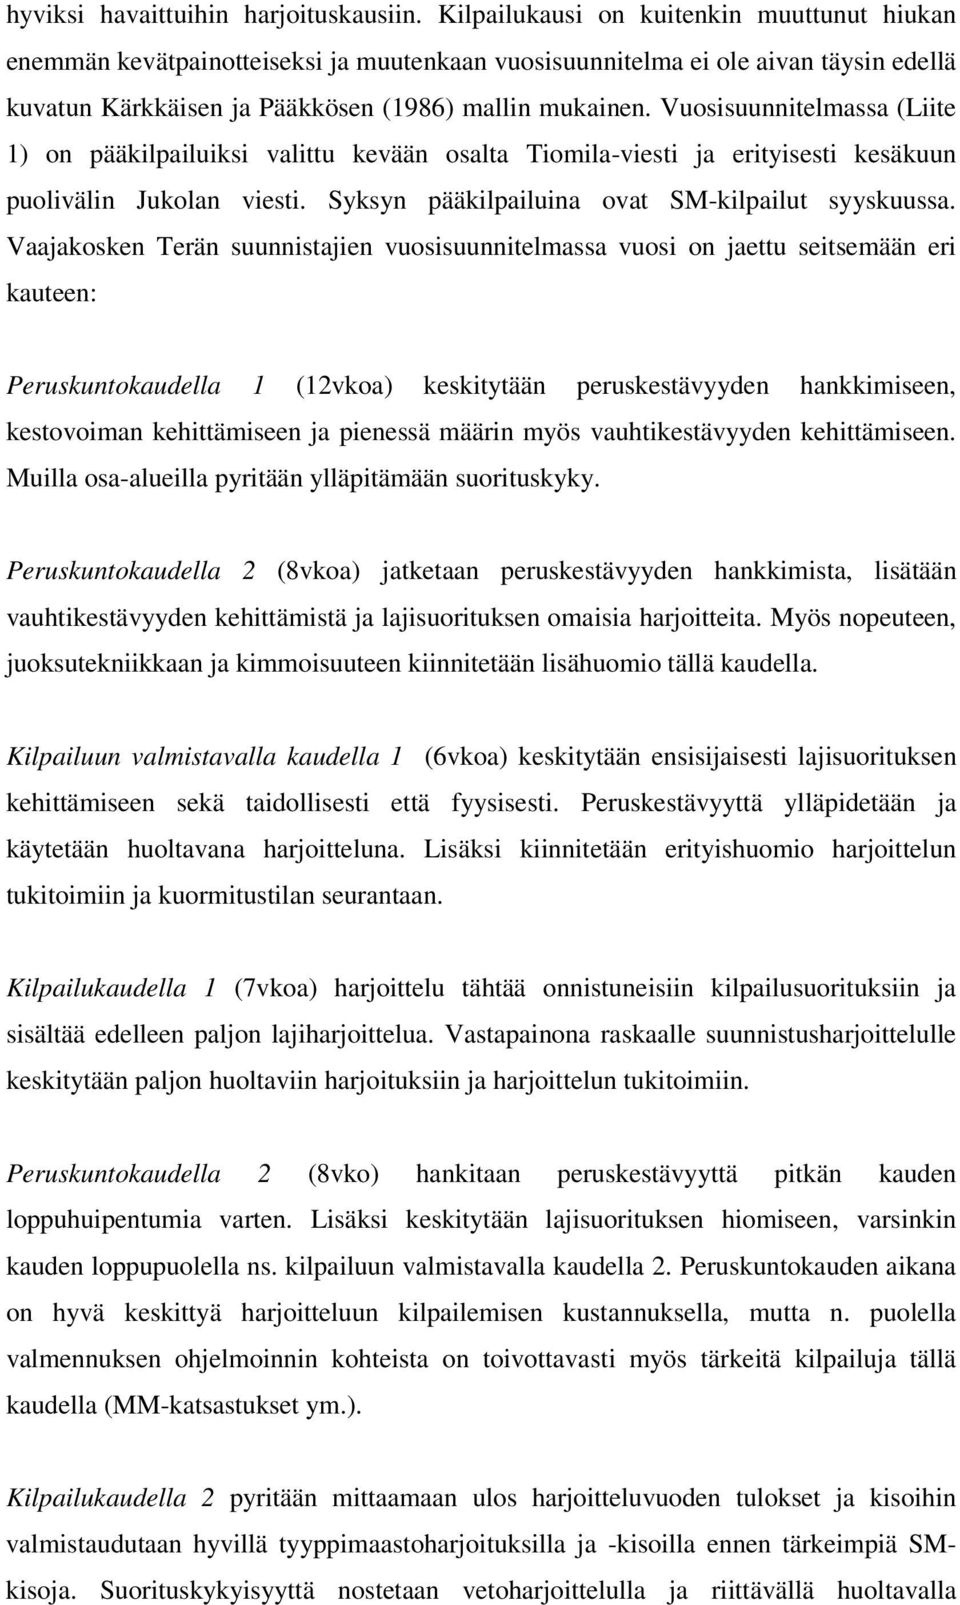 Vuosisuunnitelmassa (Liite 1) on pääkilpailuiksi valittu kevään osalta Tiomila-viesti ja erityisesti kesäkuun puolivälin Jukolan viesti. Syksyn pääkilpailuina ovat SM-kilpailut syyskuussa.